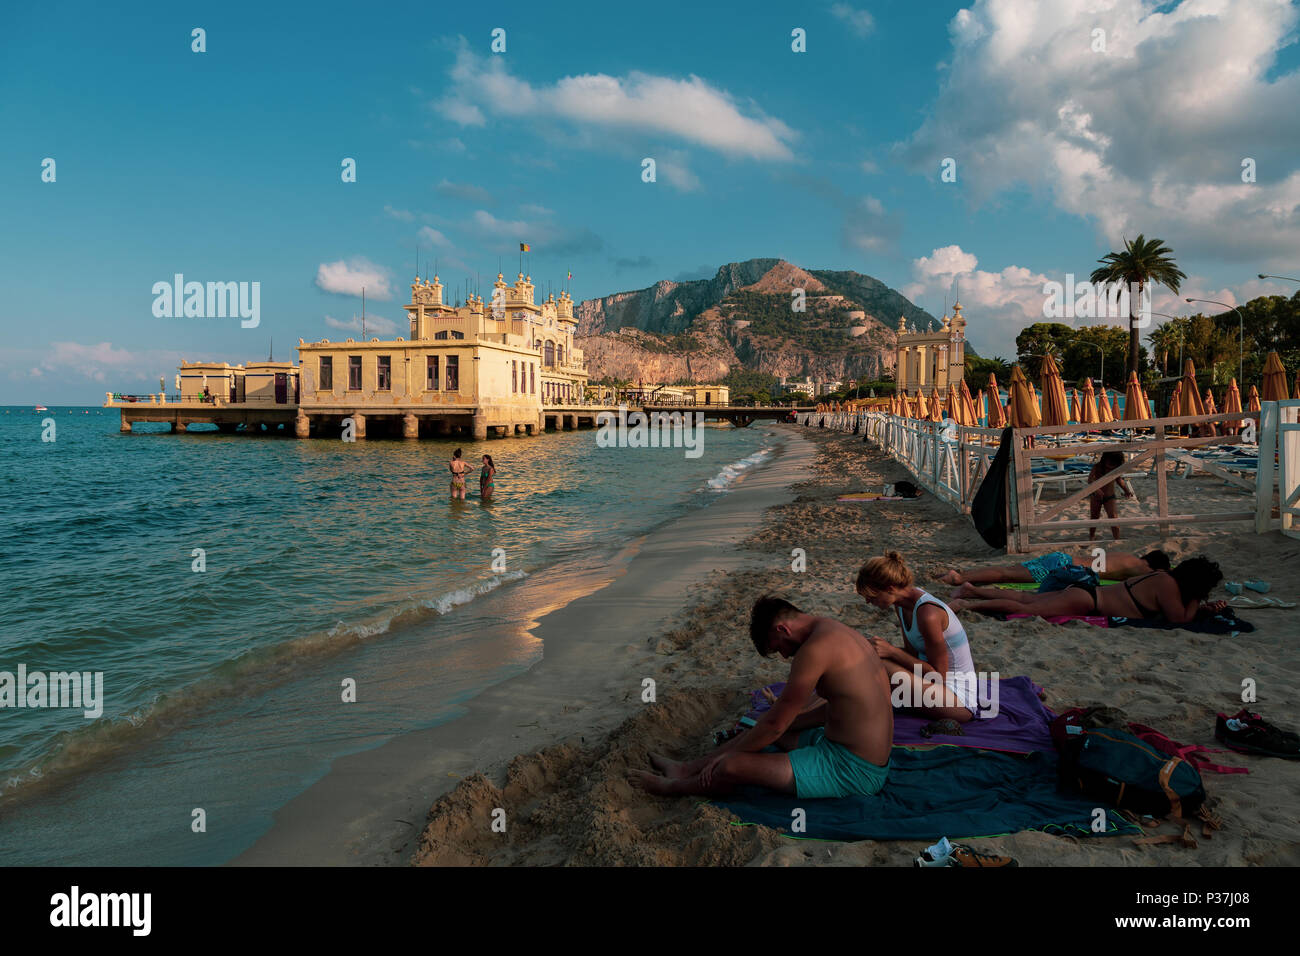 View of Mondello beach in Palermo, Sicily Stock Photo